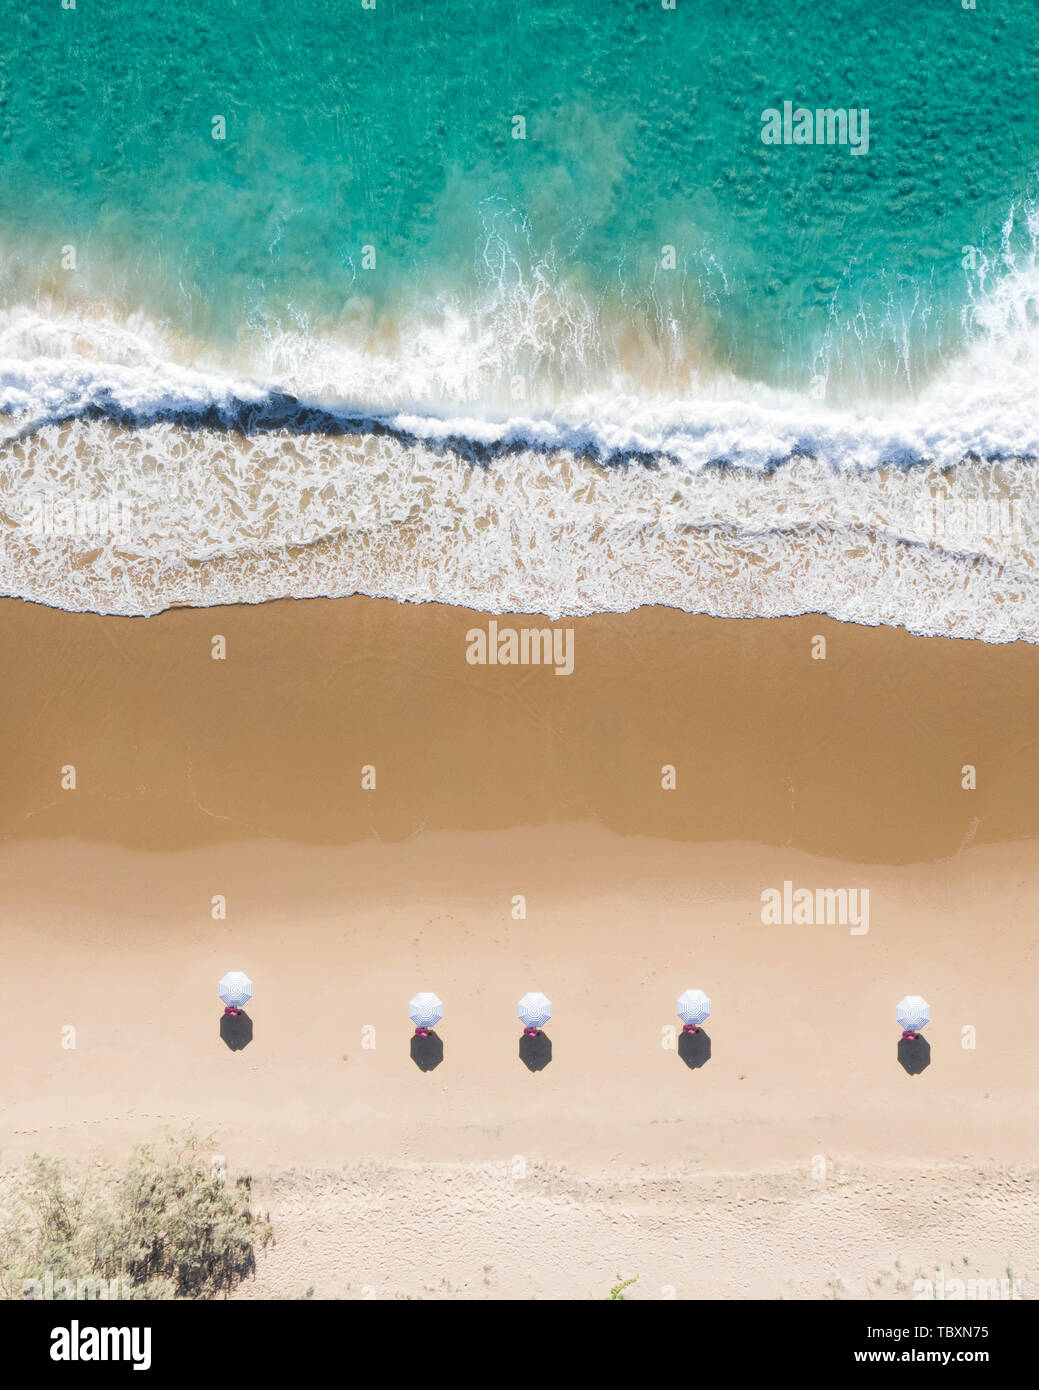 Spiaggia Vista aerea di ombrelli, onde, blu oceano e rilassante vibes nella costa orientale dell'Australia Foto Stock